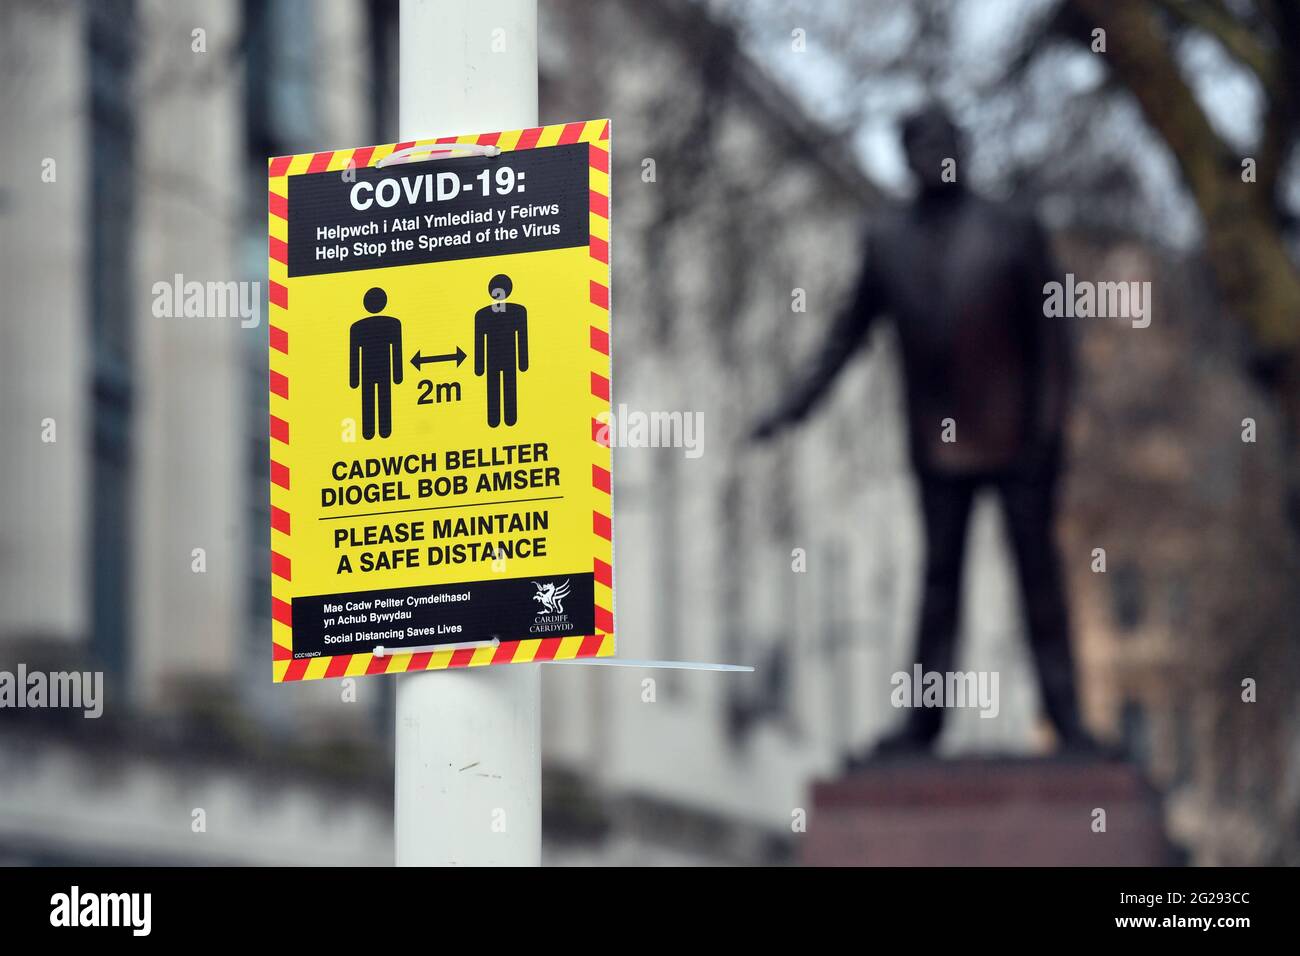 Cardiff City Centre, Wales, während der Sperrung der Covid 19/Coronavirus-Pandemie, Statue of Aneurin ( Nye) Bevan, Gründer des NHS. Bild aufgenommen am 8. Januar 2021 Stockfoto